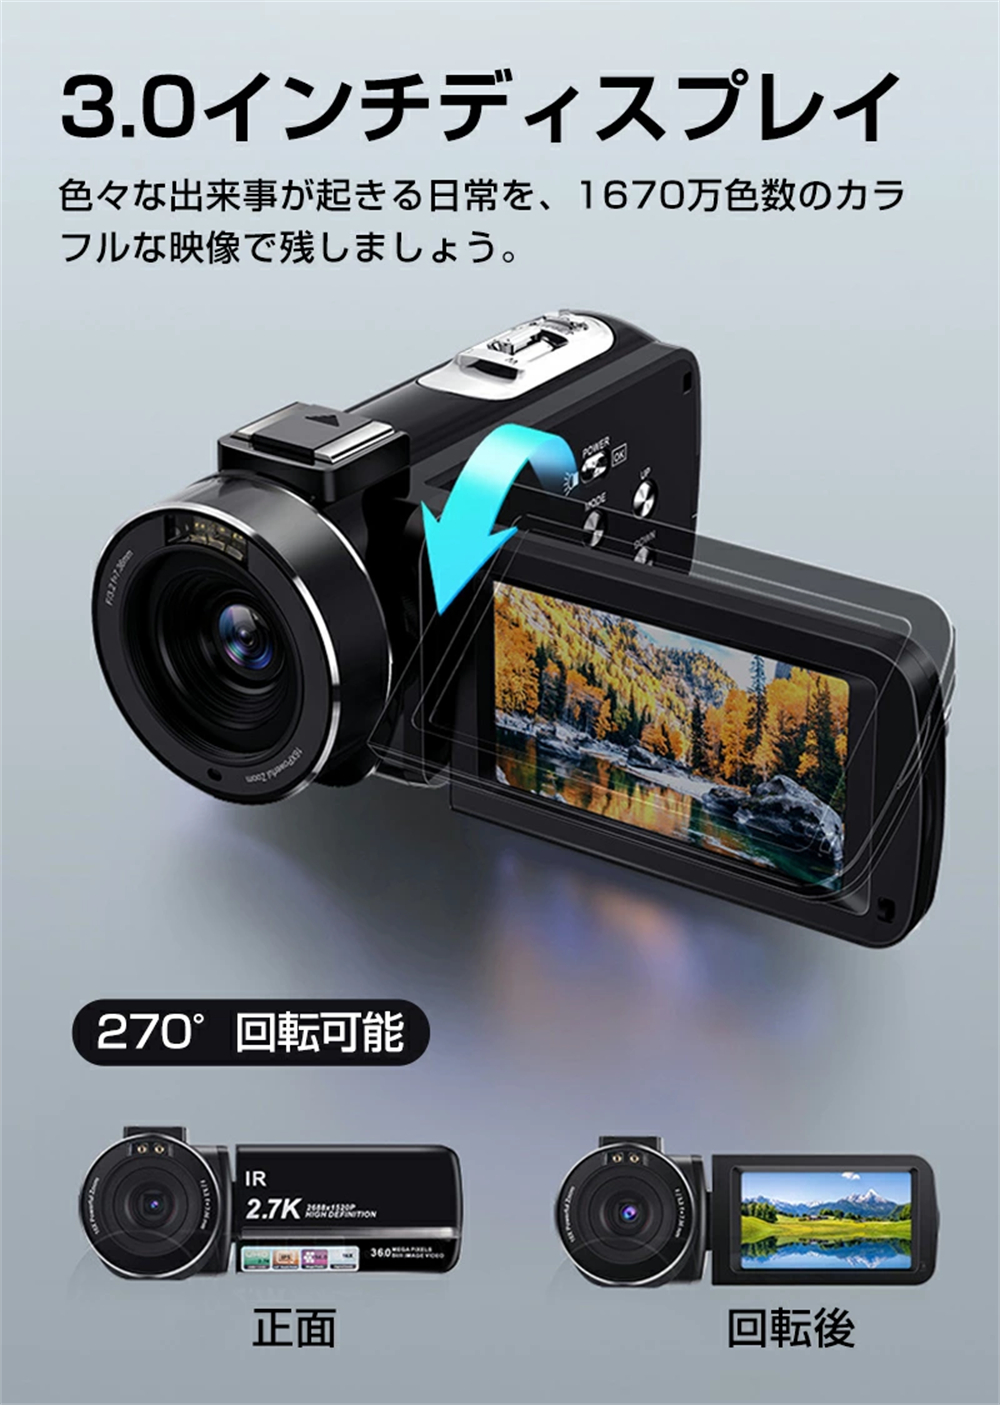 ビデオカメラ 2.7K 3600万画素 32GBカード付き Wifi機能 撮影 録画 DV 